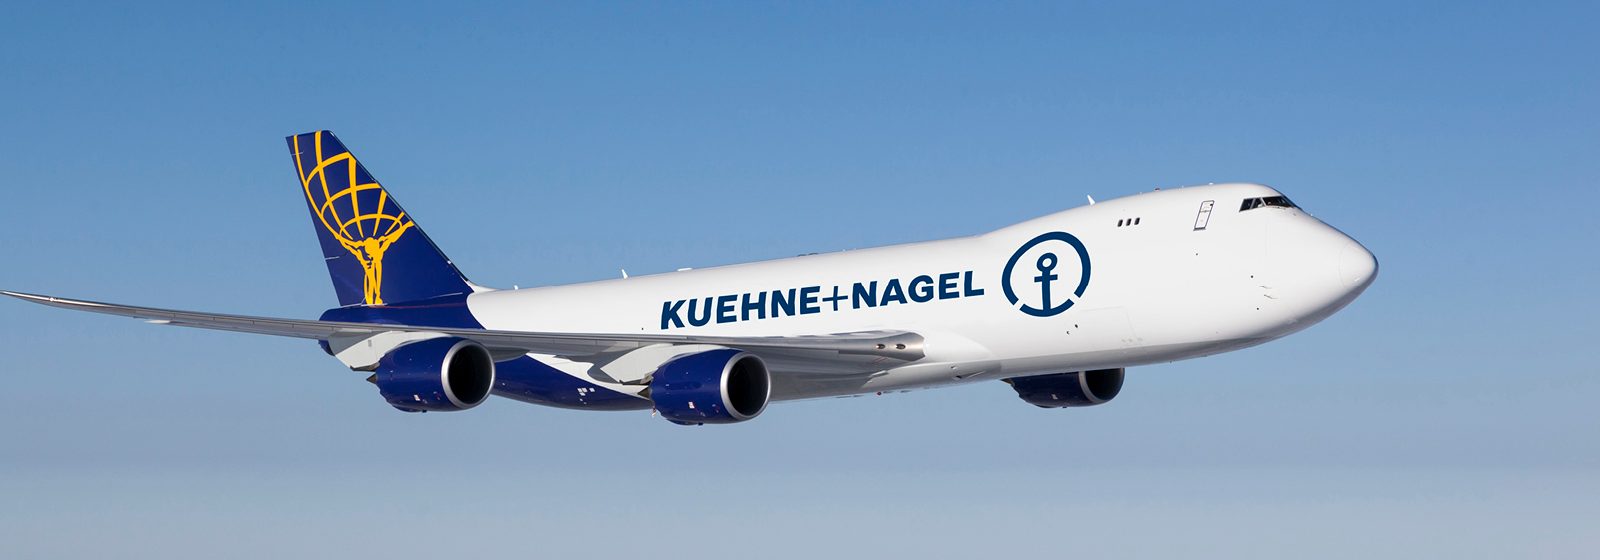 Vrachtvliegtuig Kuehne+Nagel